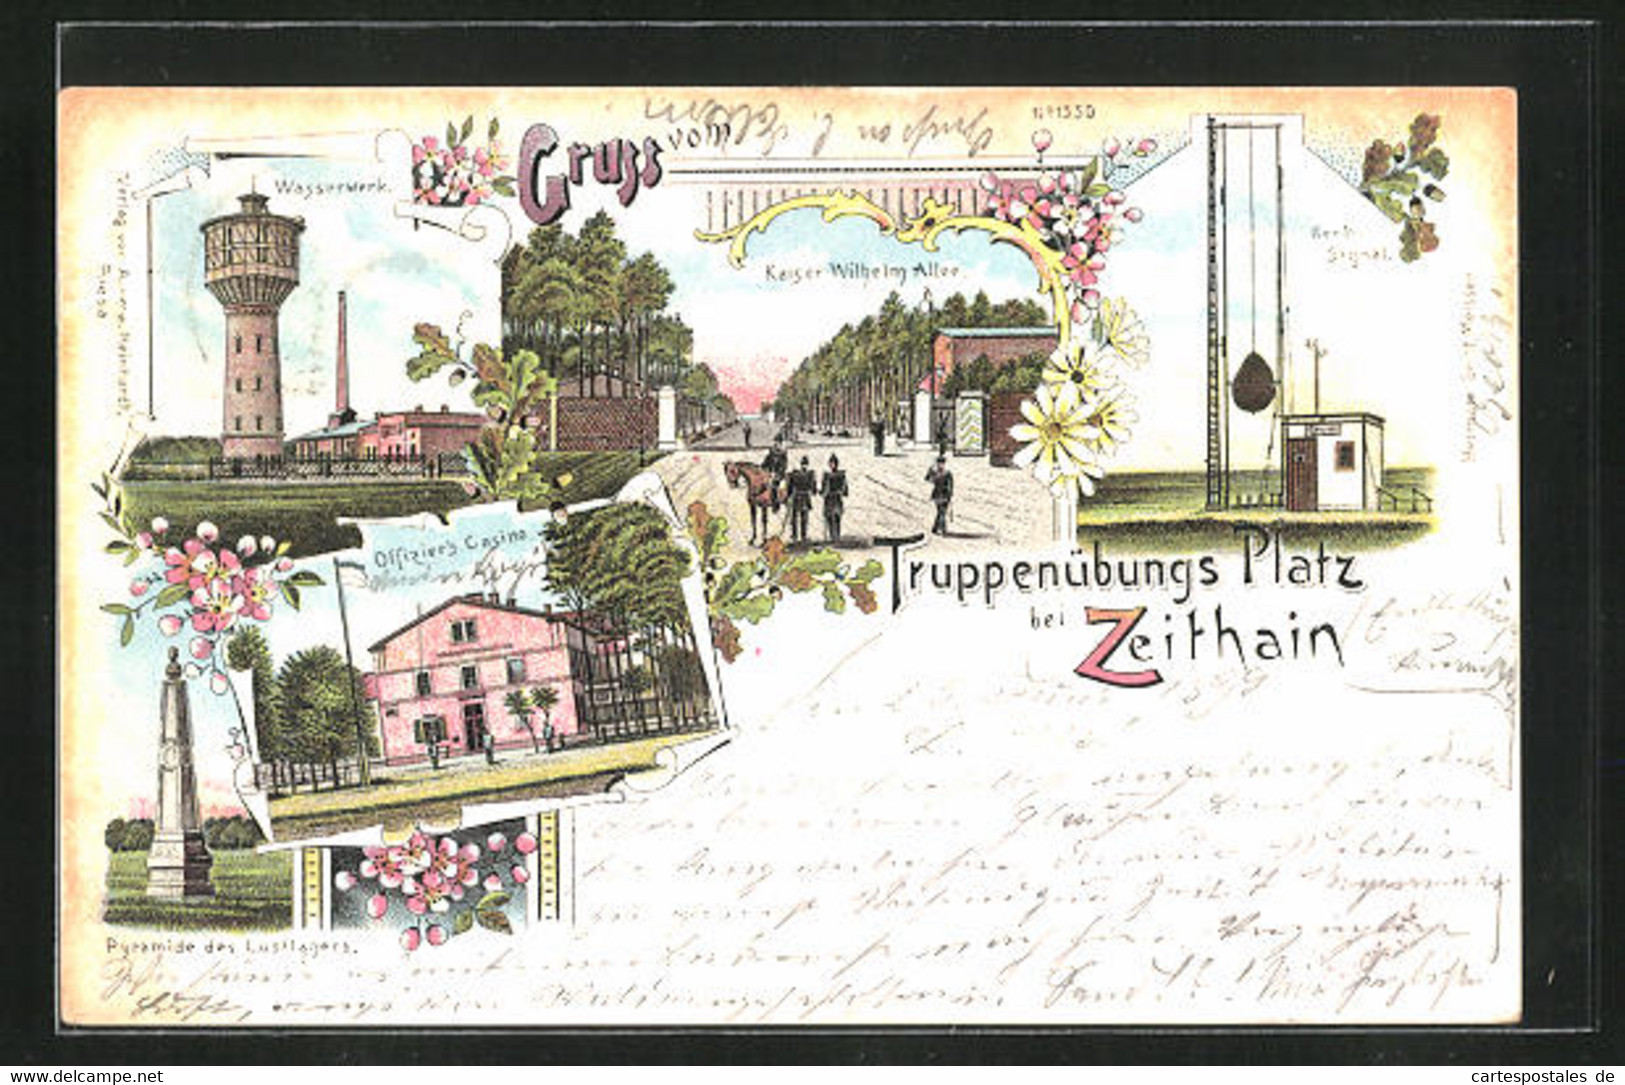 Lithographie Zeithain, Kaiser Wilhelm Allee, Offizierscasino, Wasserwerk - Zeithain